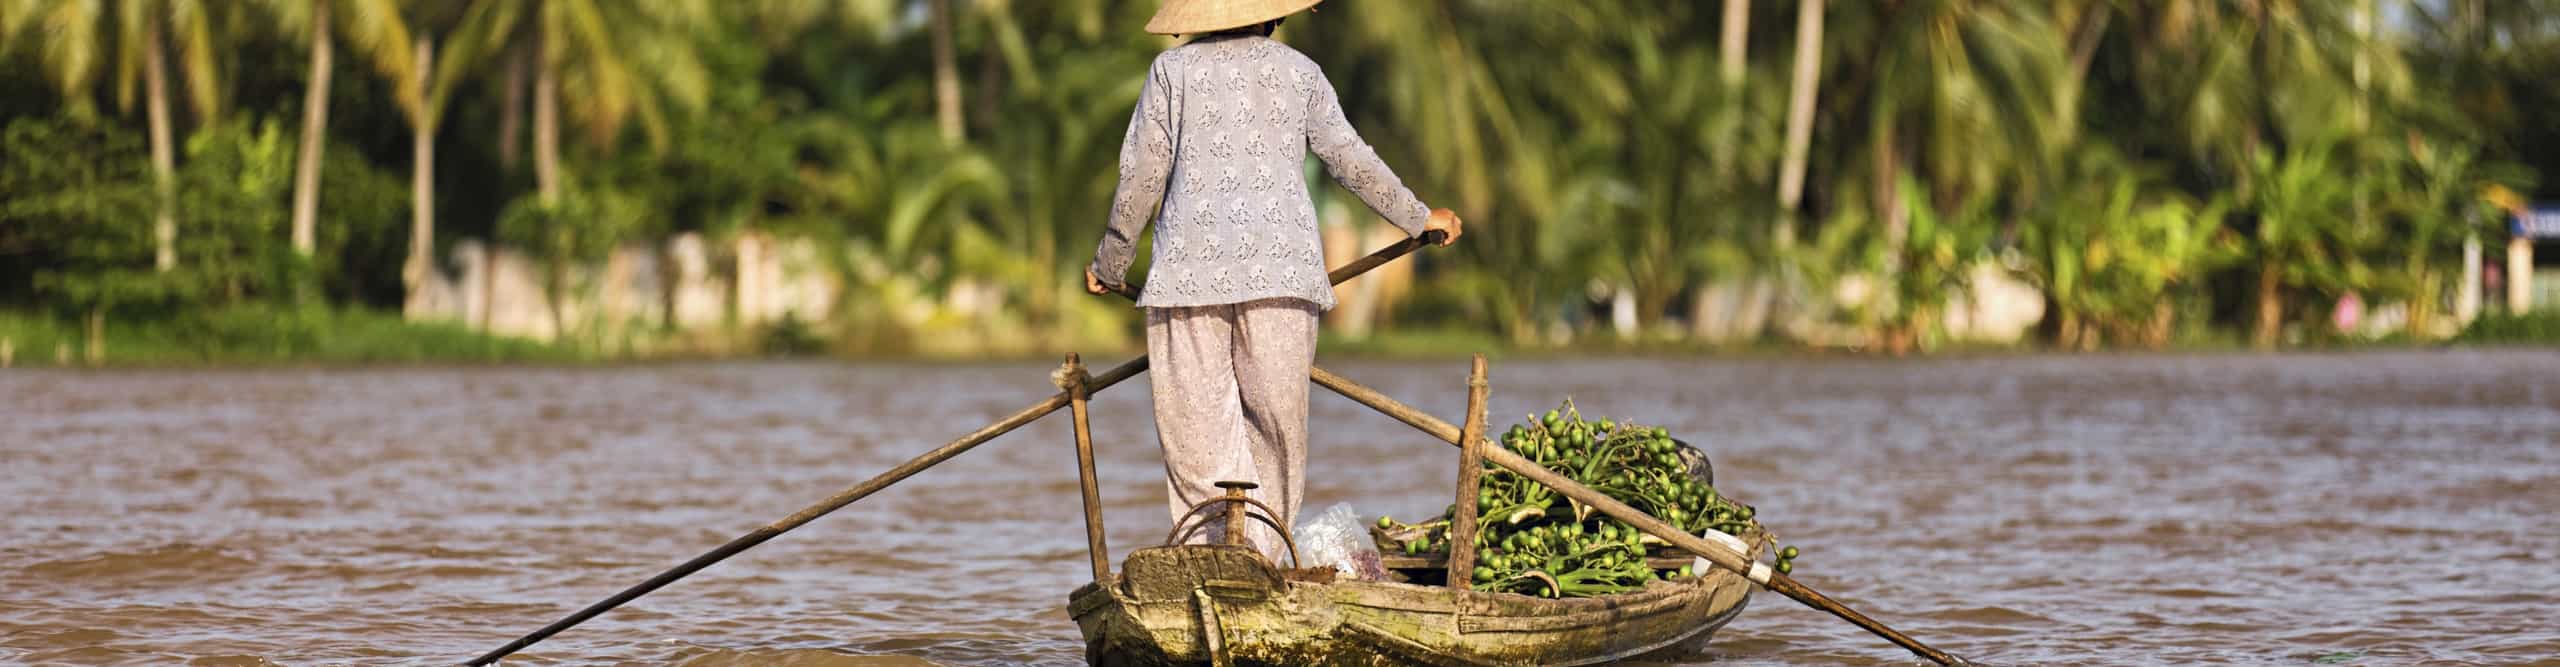 Mekong Delta Activities